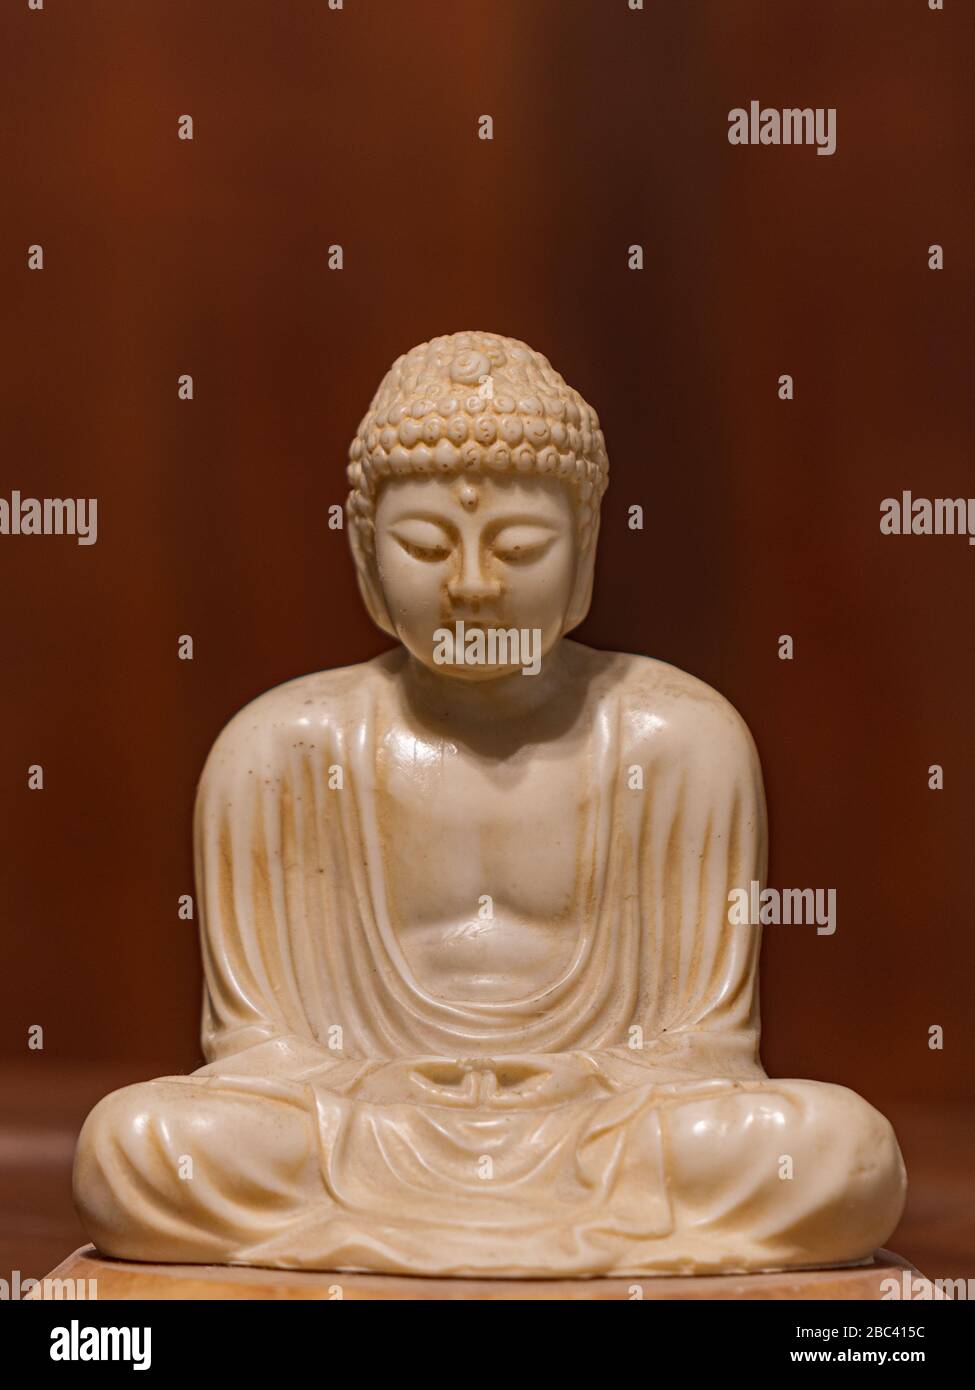 Statuette of Gautama Buddha in light marble in a prayer position, Dhyana-mudrain Buddha Shakyamuni in meditation Stock Photo